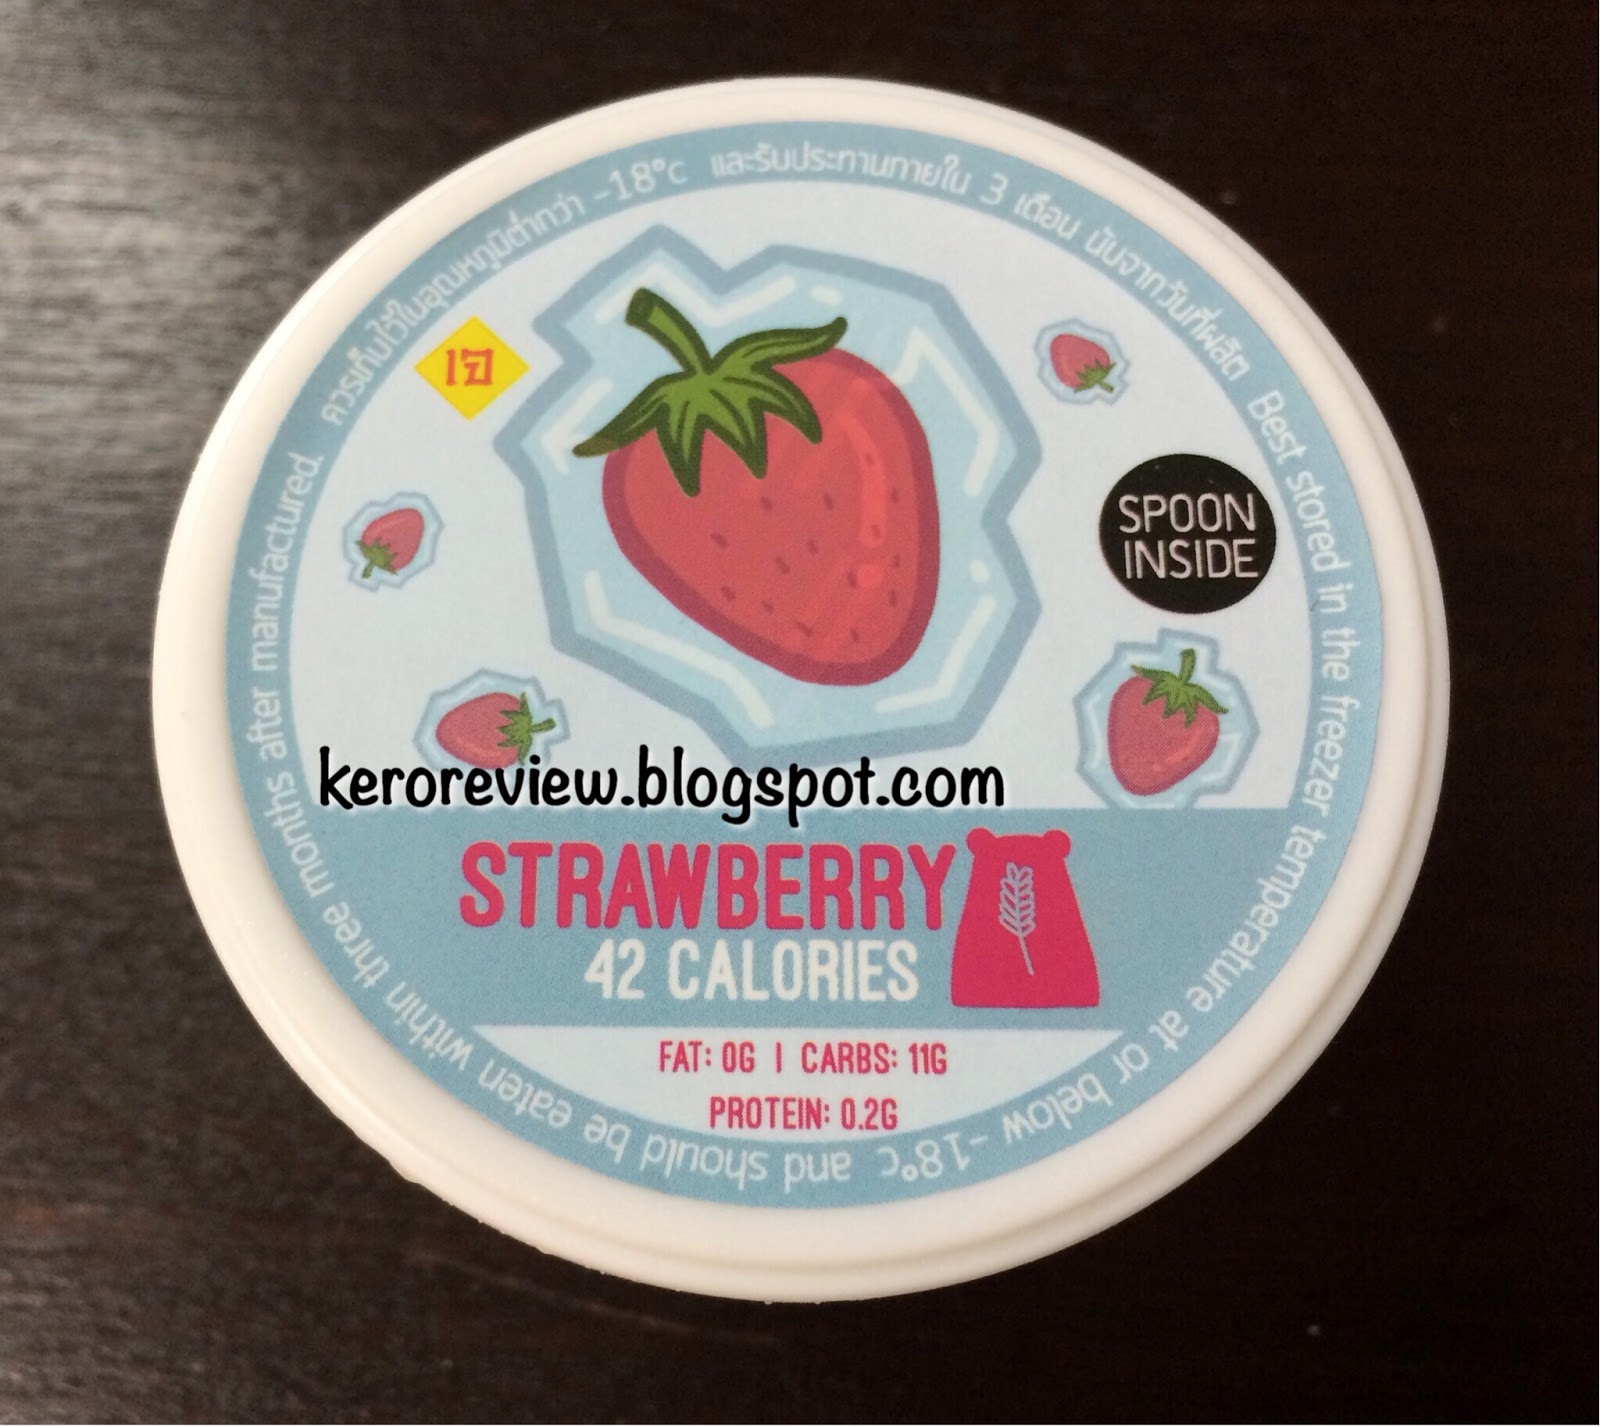 รีวิว ไอศกรีมของคนไทย โพล่า ฮาเวสท์ รสสตรอเบอร์รี่ (CR) Review Polar Harvest Strawberry Ice Cream from Thailand.